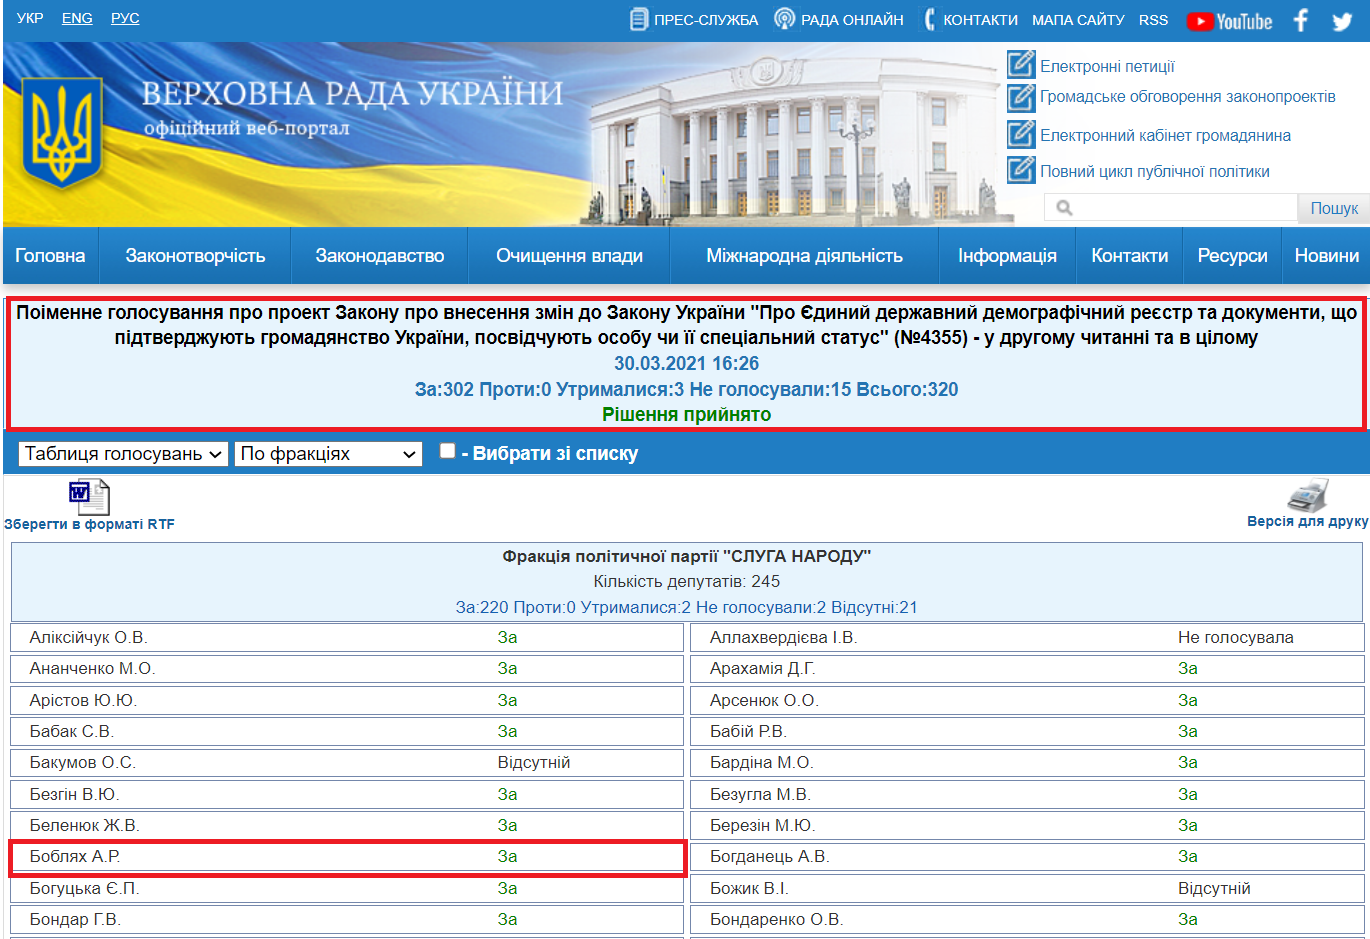 http://w1.c1.rada.gov.ua/pls/radan_gs09/ns_golos?g_id=11167